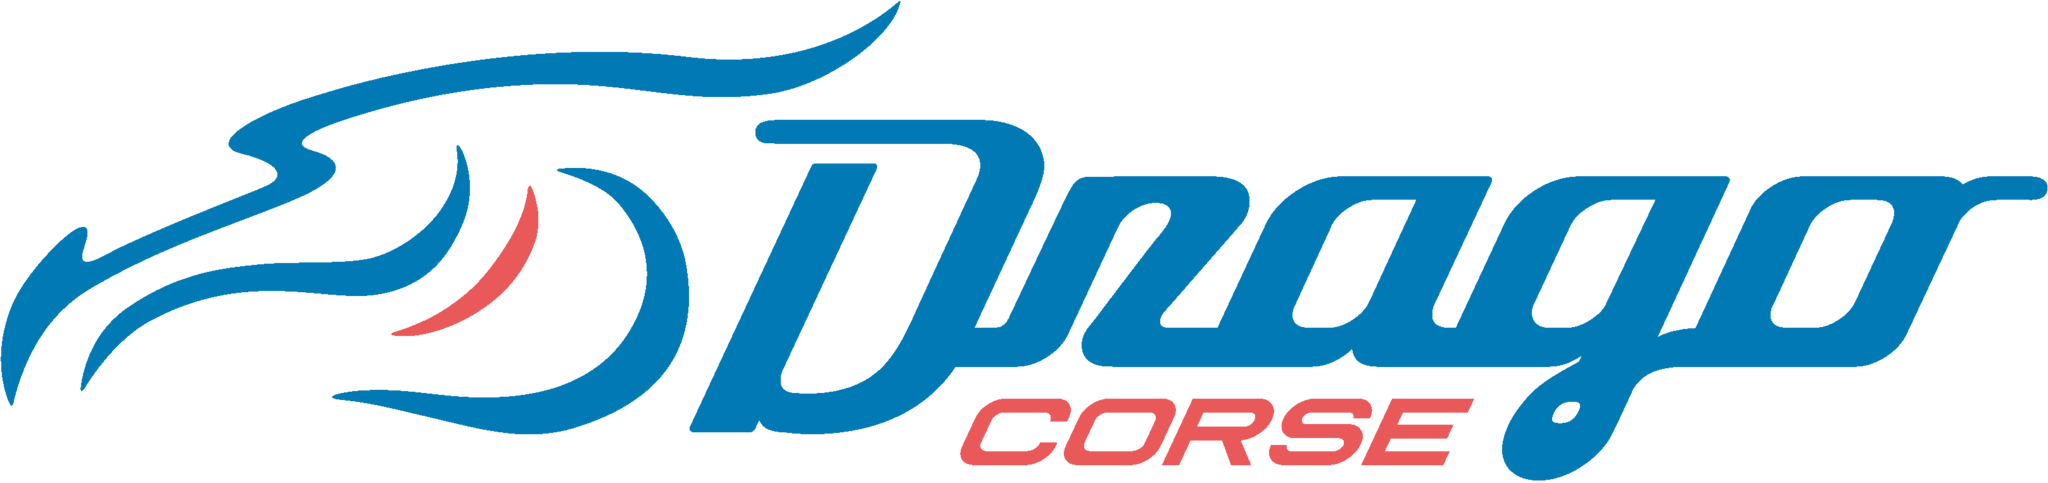 Drago CORSE net